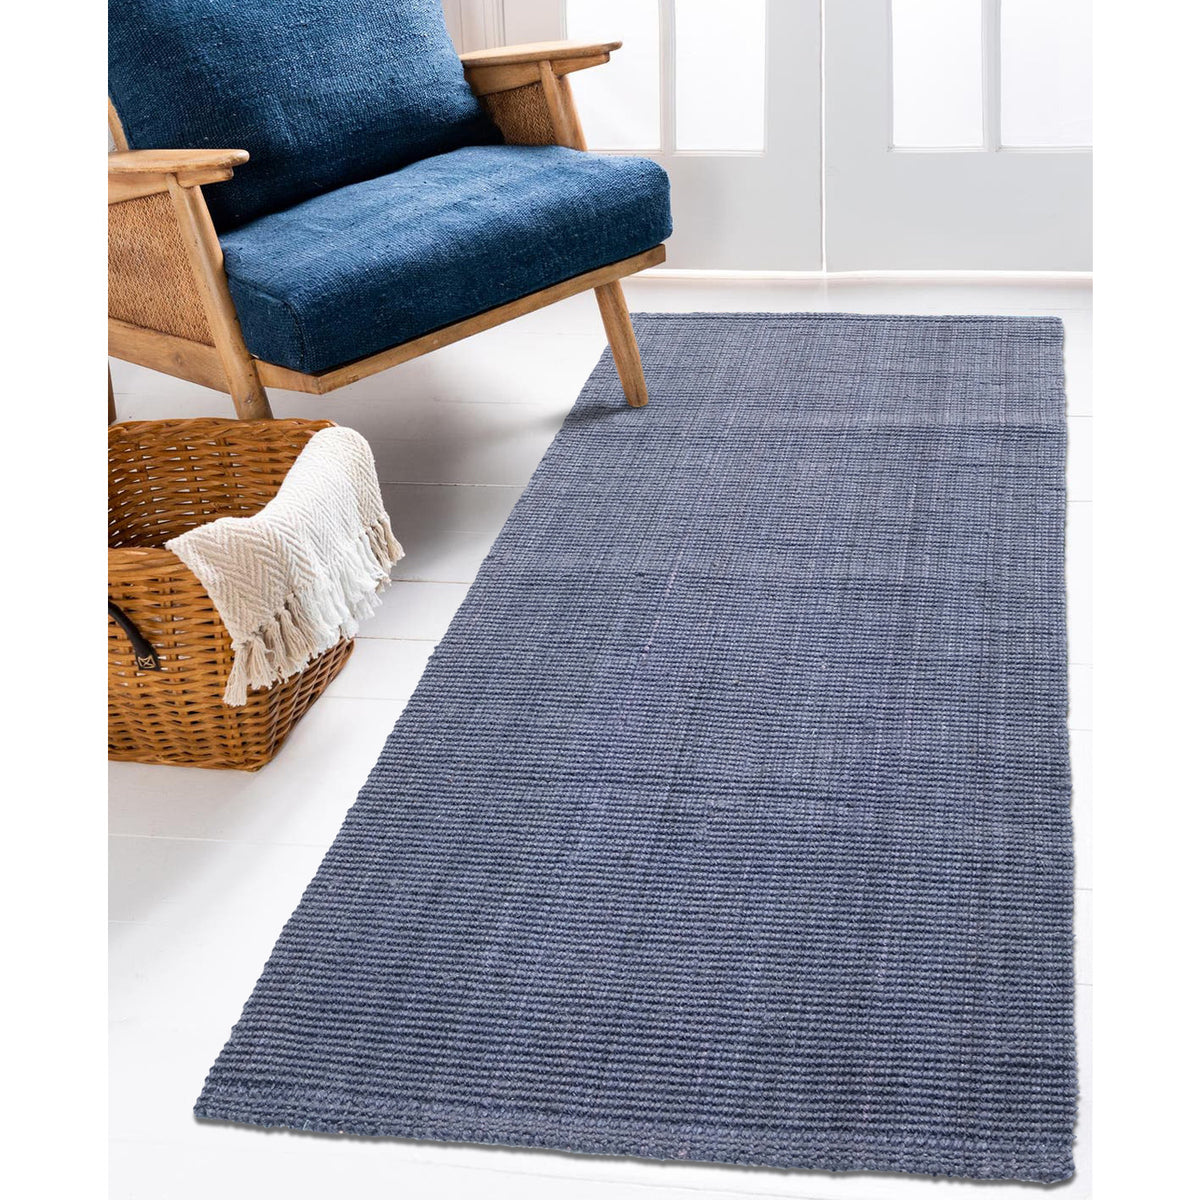 Dark Grey Jute Runner Rug / Eco-Friendly Handwoven Carpet for Bedside / Living Room Decor